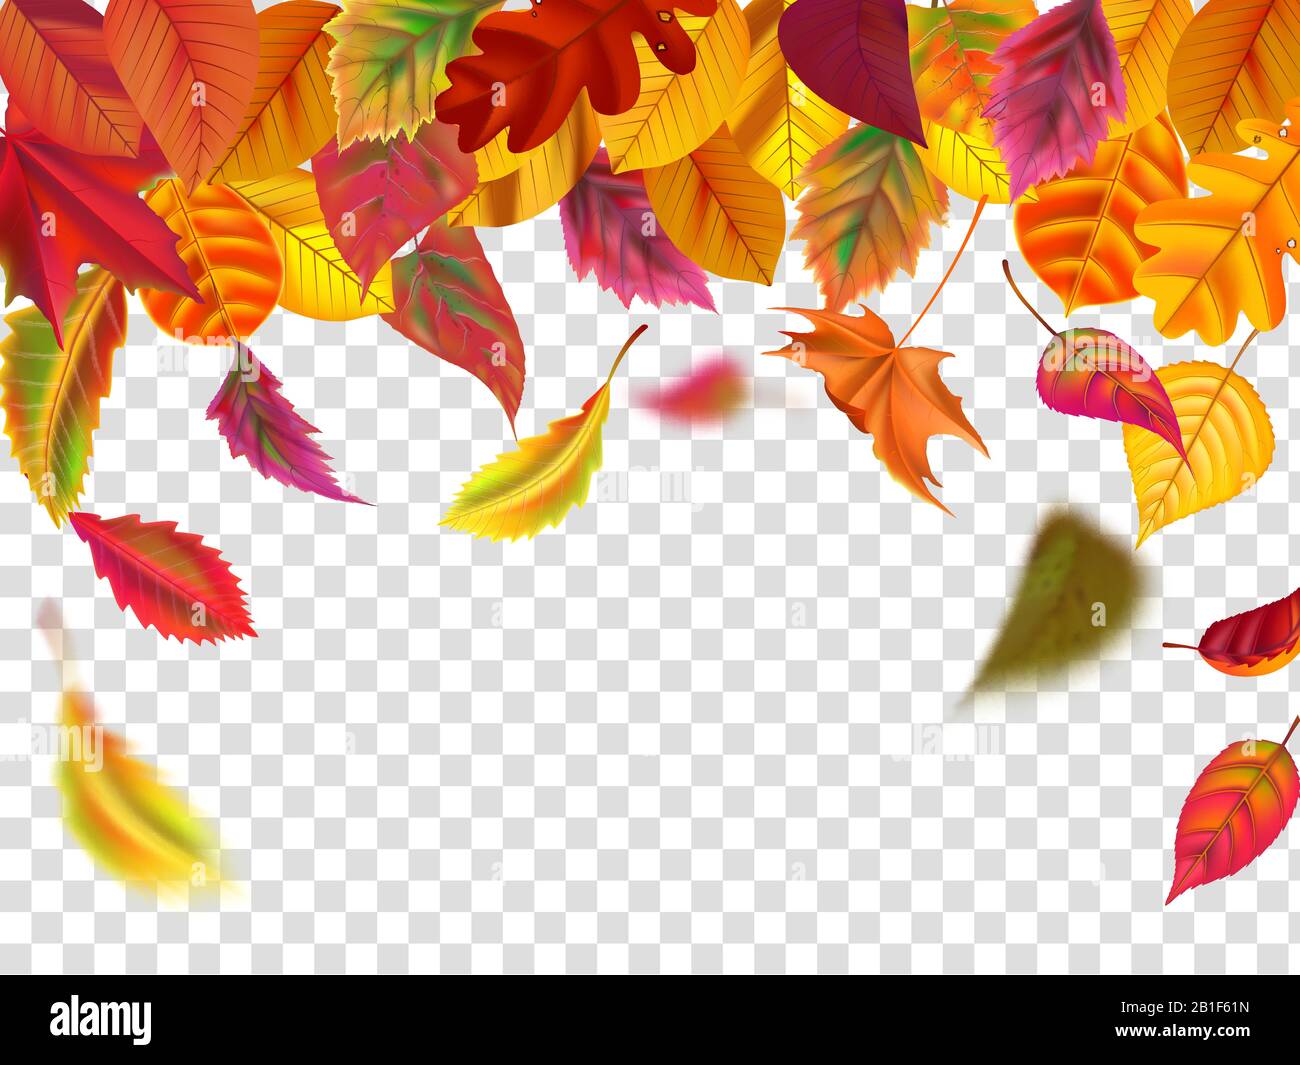 Herbstblätter fallen. Herabfallendes verschwommenes Blatt, herbstlicher Blattfall und Wind steigen gelbe Blätter isolierte Vektorgrafiken Stock Vektor